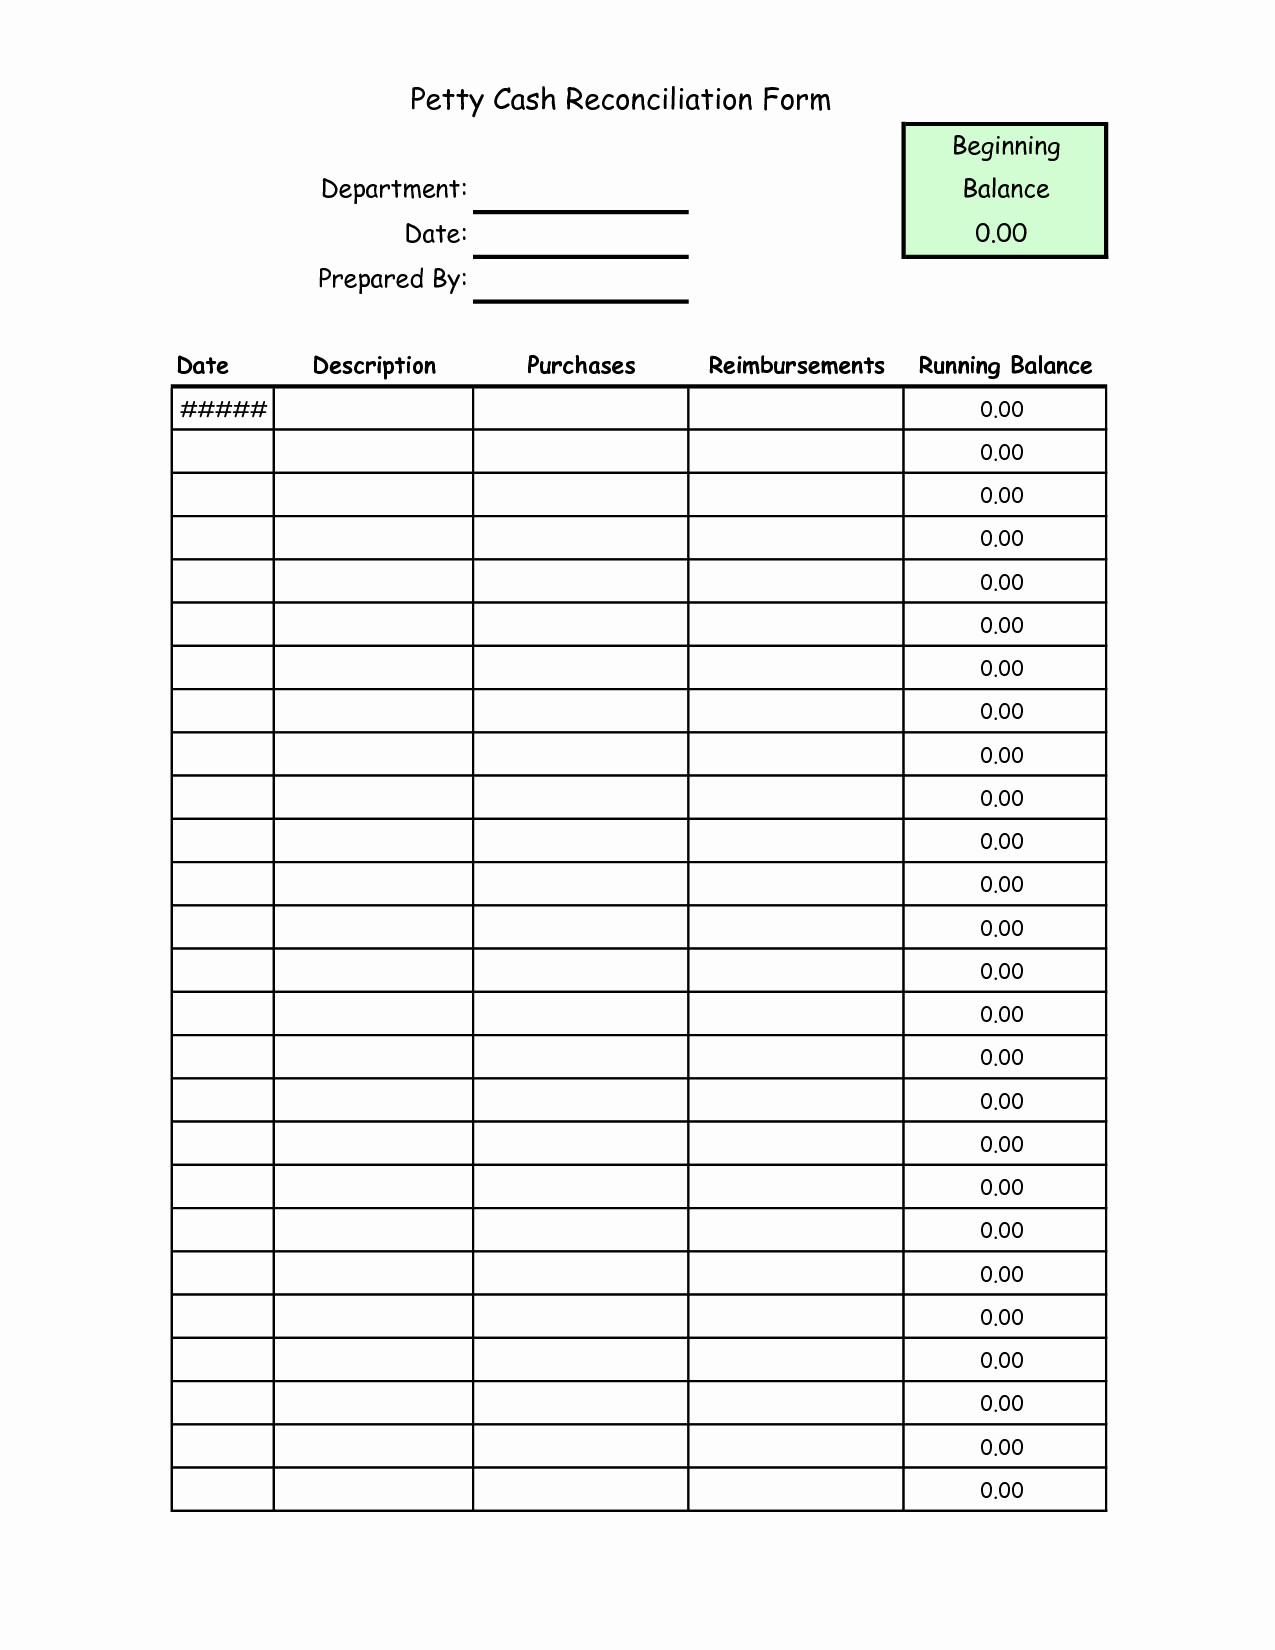 Petty Cash Reconciliation form Excel Unique Best S Of Sample Petty Cash form Petty Cash form